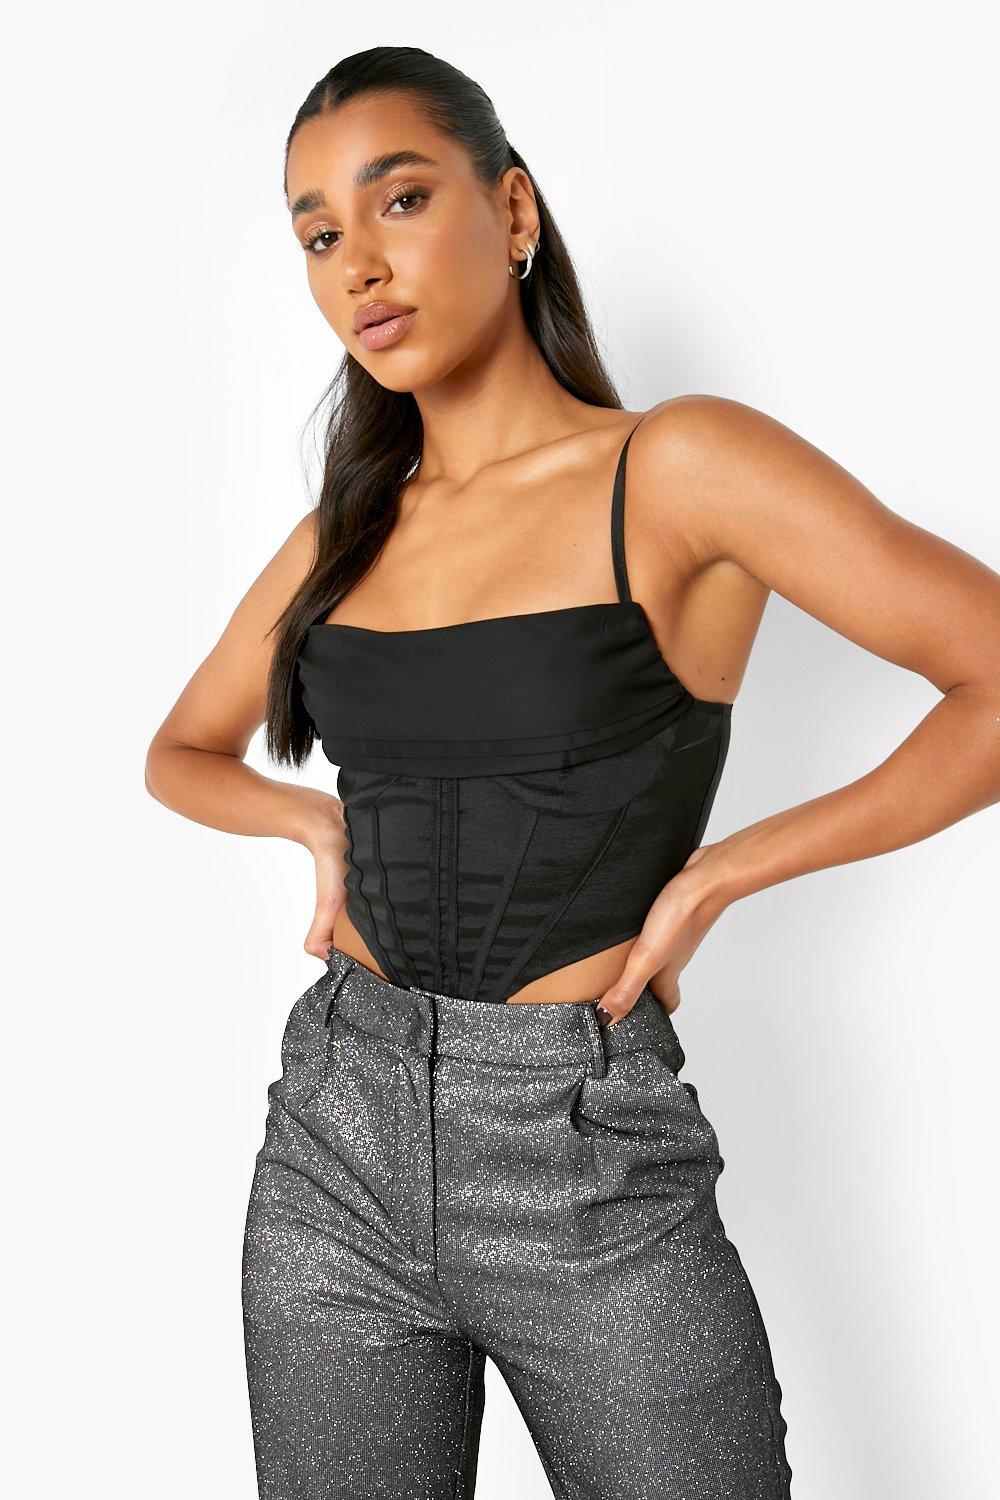 https://media.boohoo.com/i/boohoo/fzz35881_black_xl_3/female-corset-top